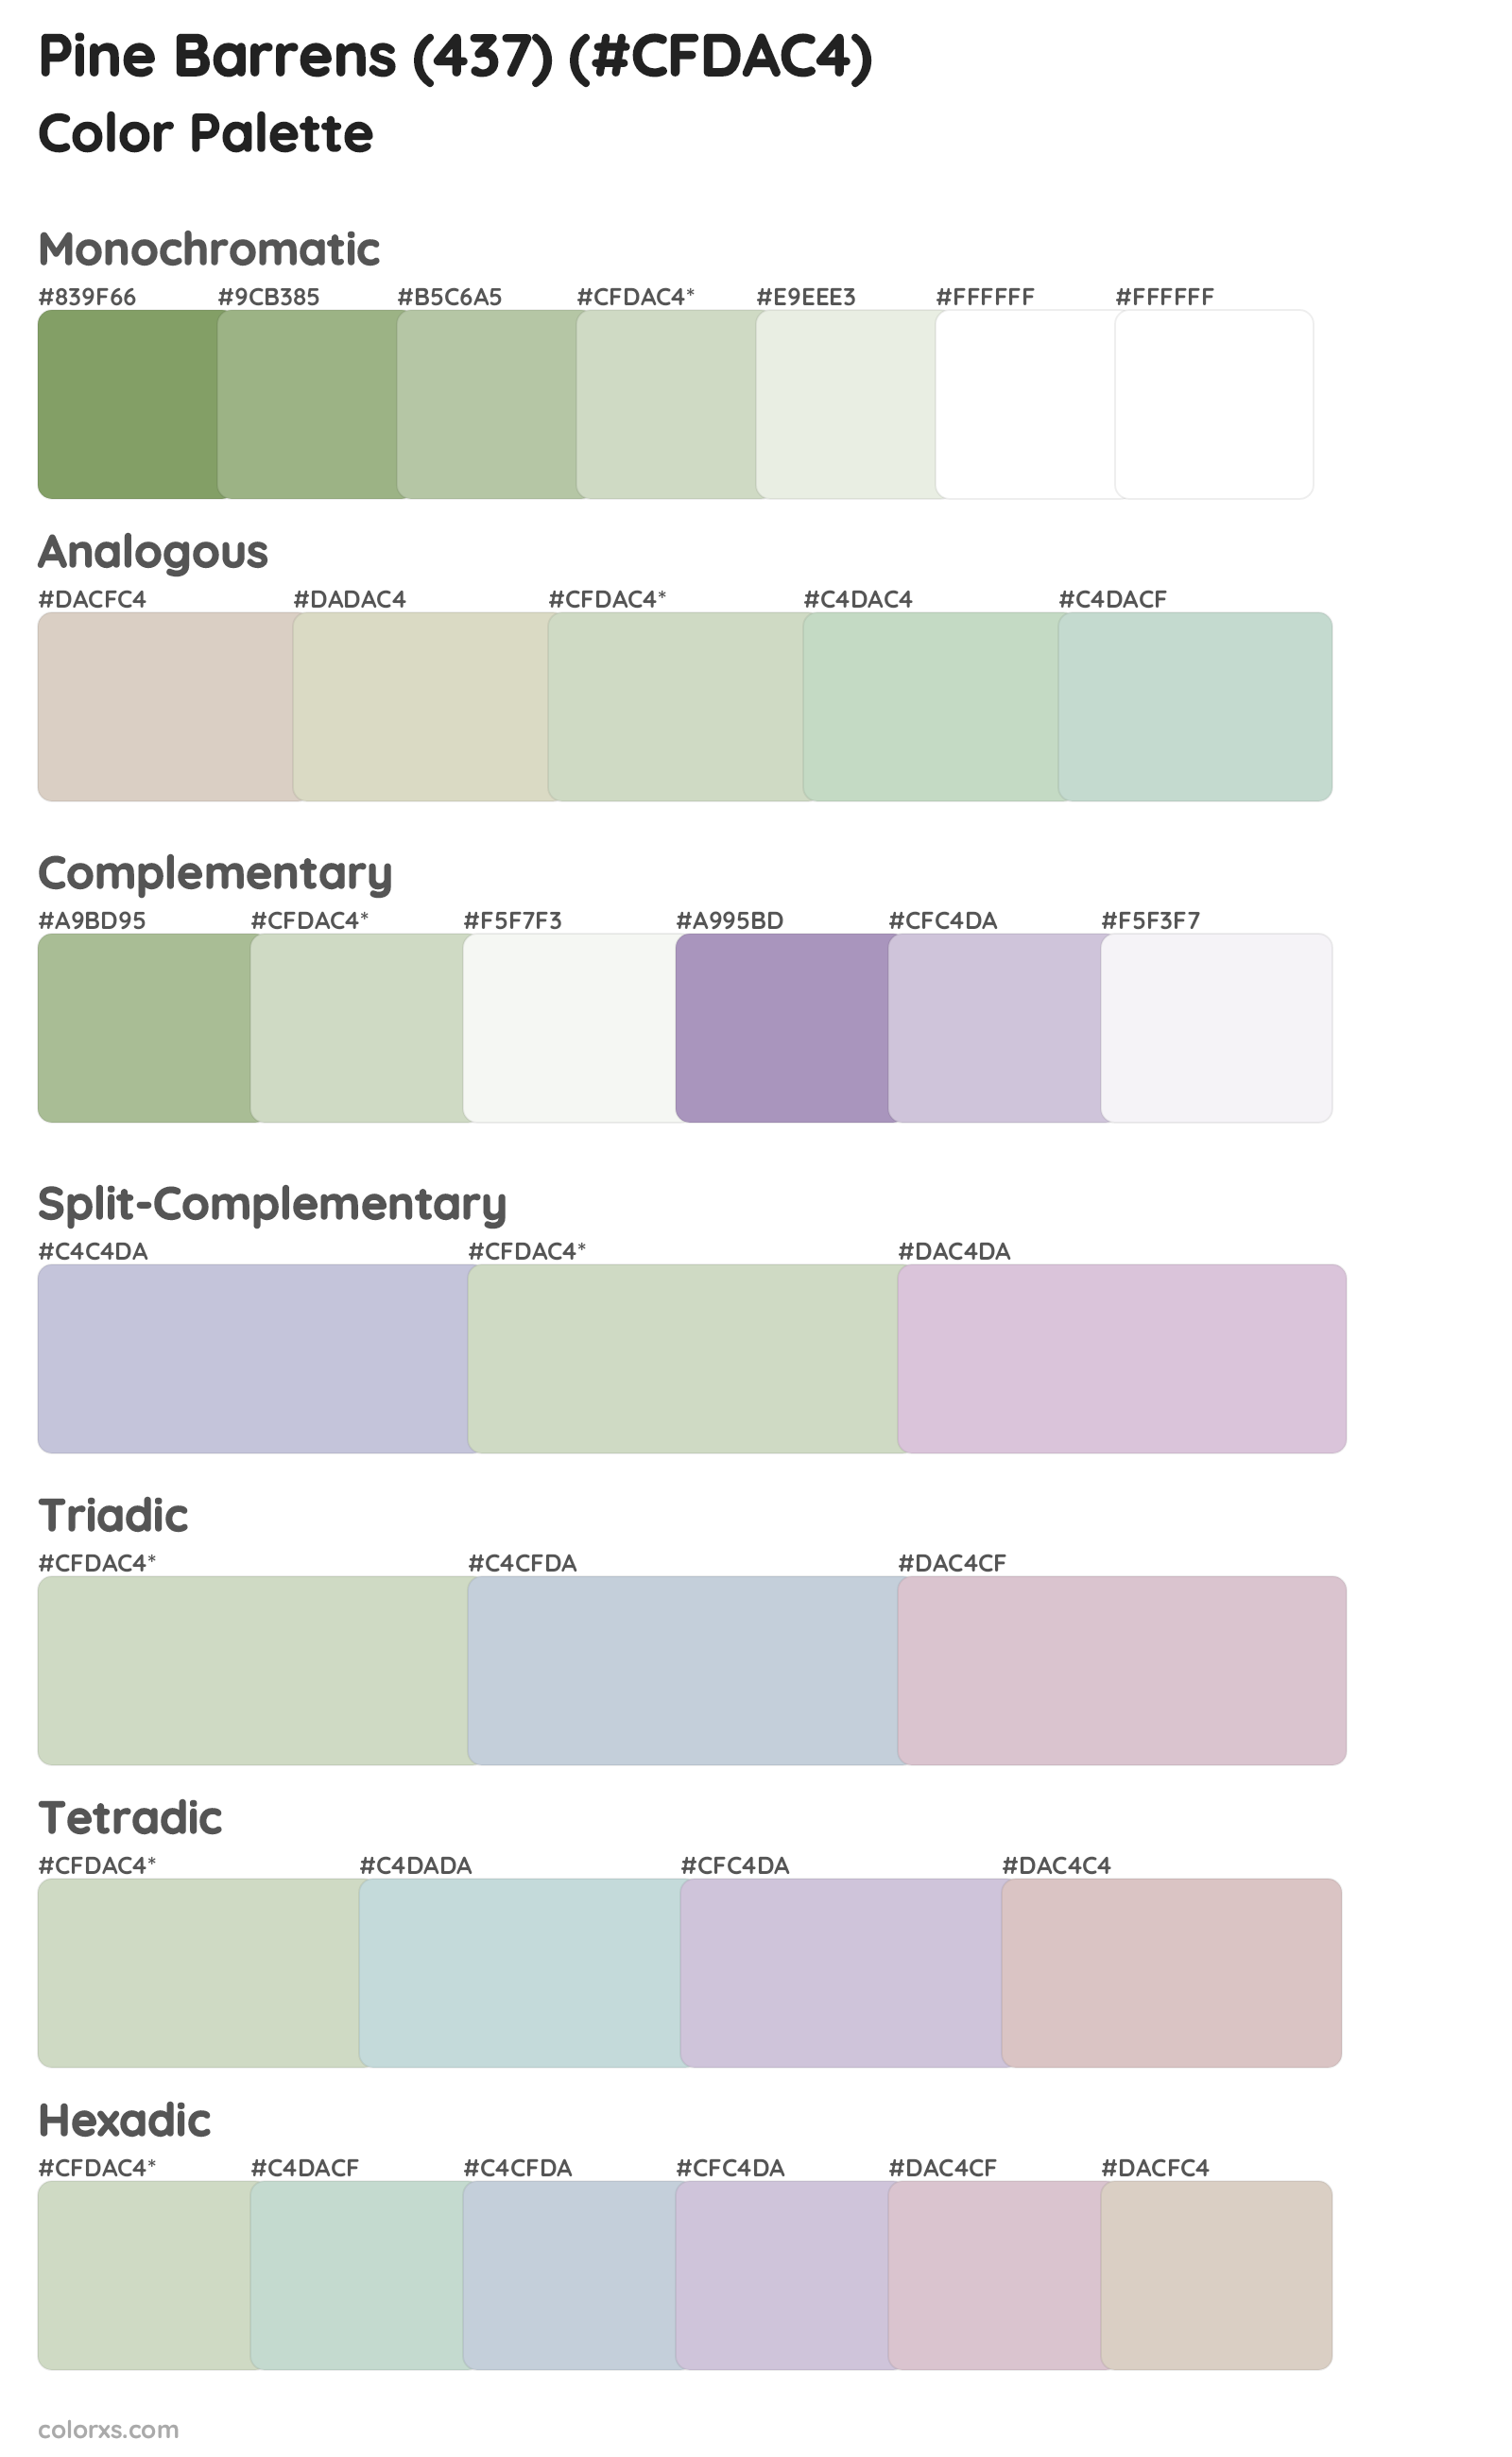 Pine Barrens (437) Color Scheme Palettes